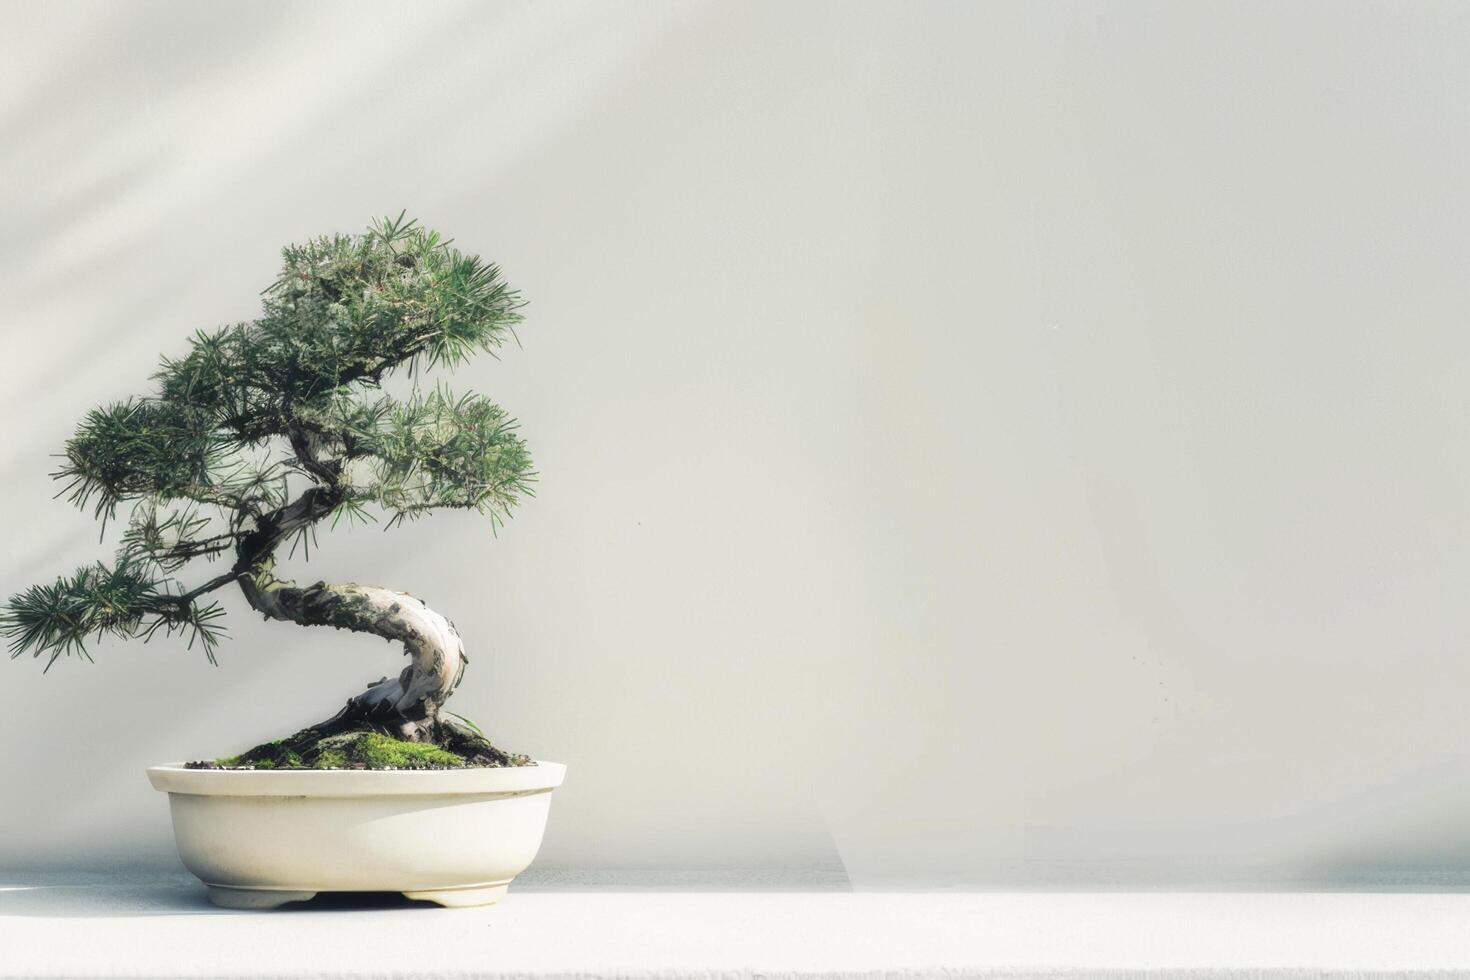 un bonsai árbol plantado en un limpio, minimalista maceta. foto